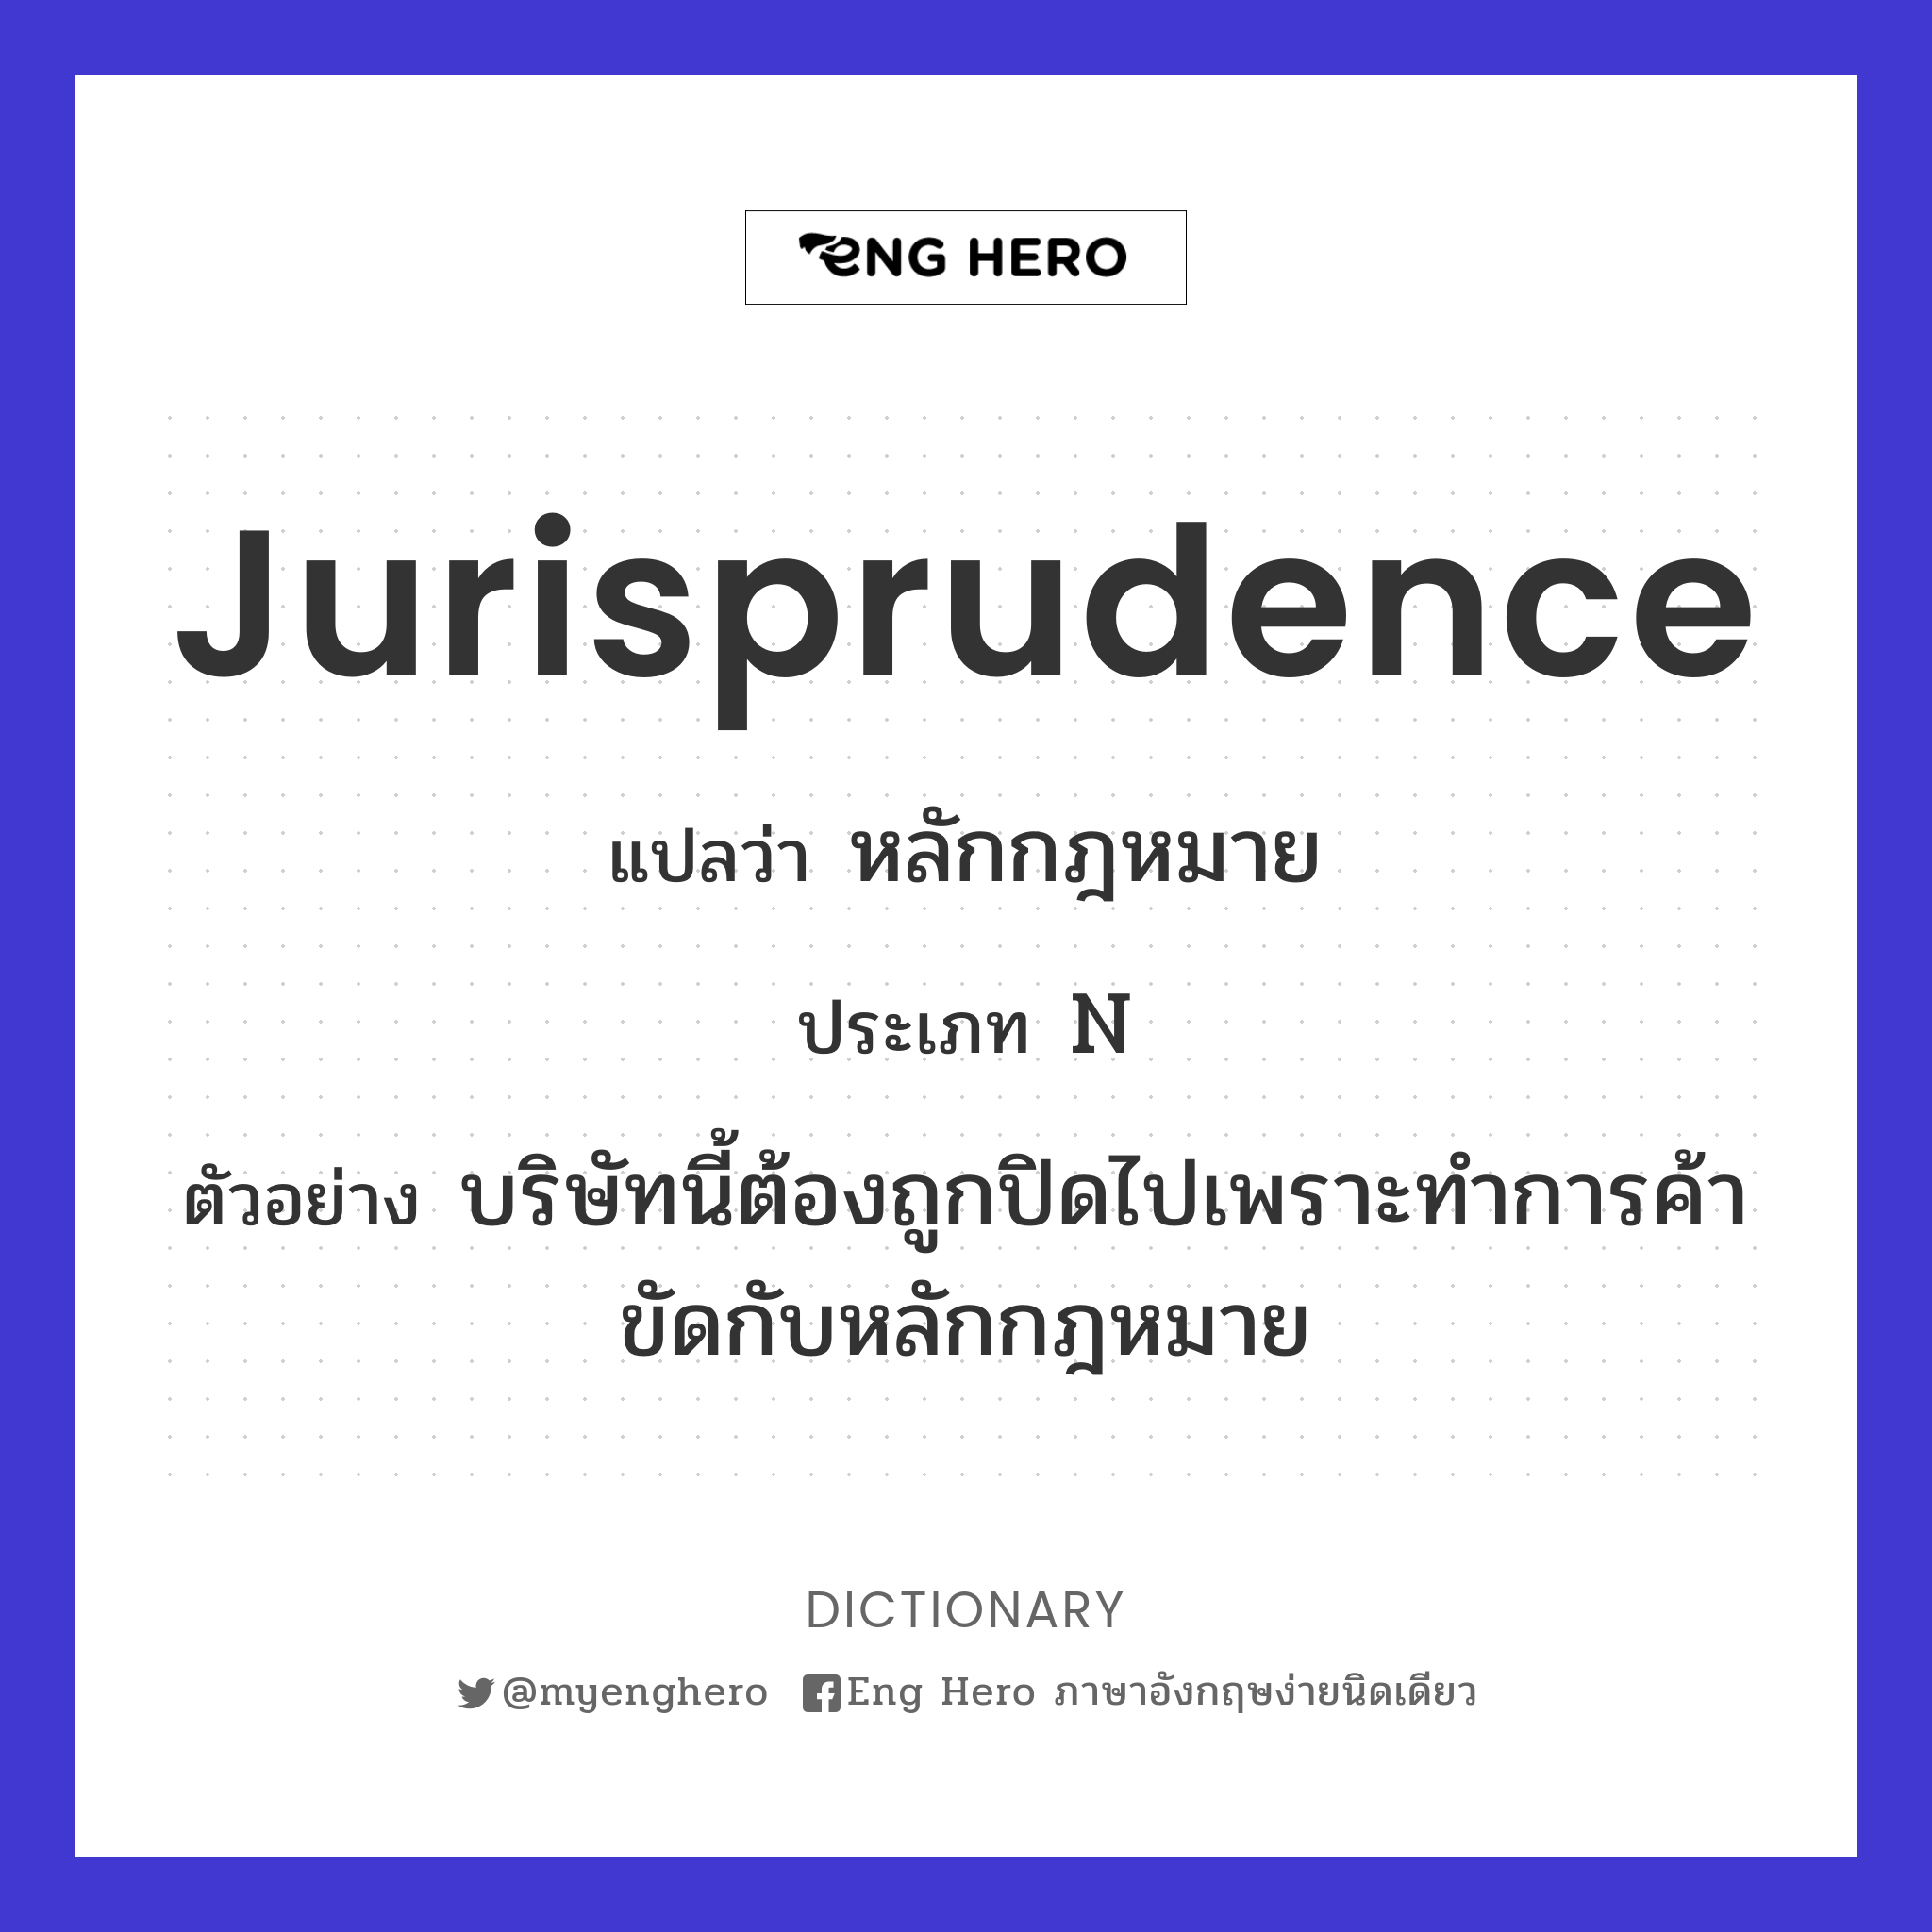 jurisprudence